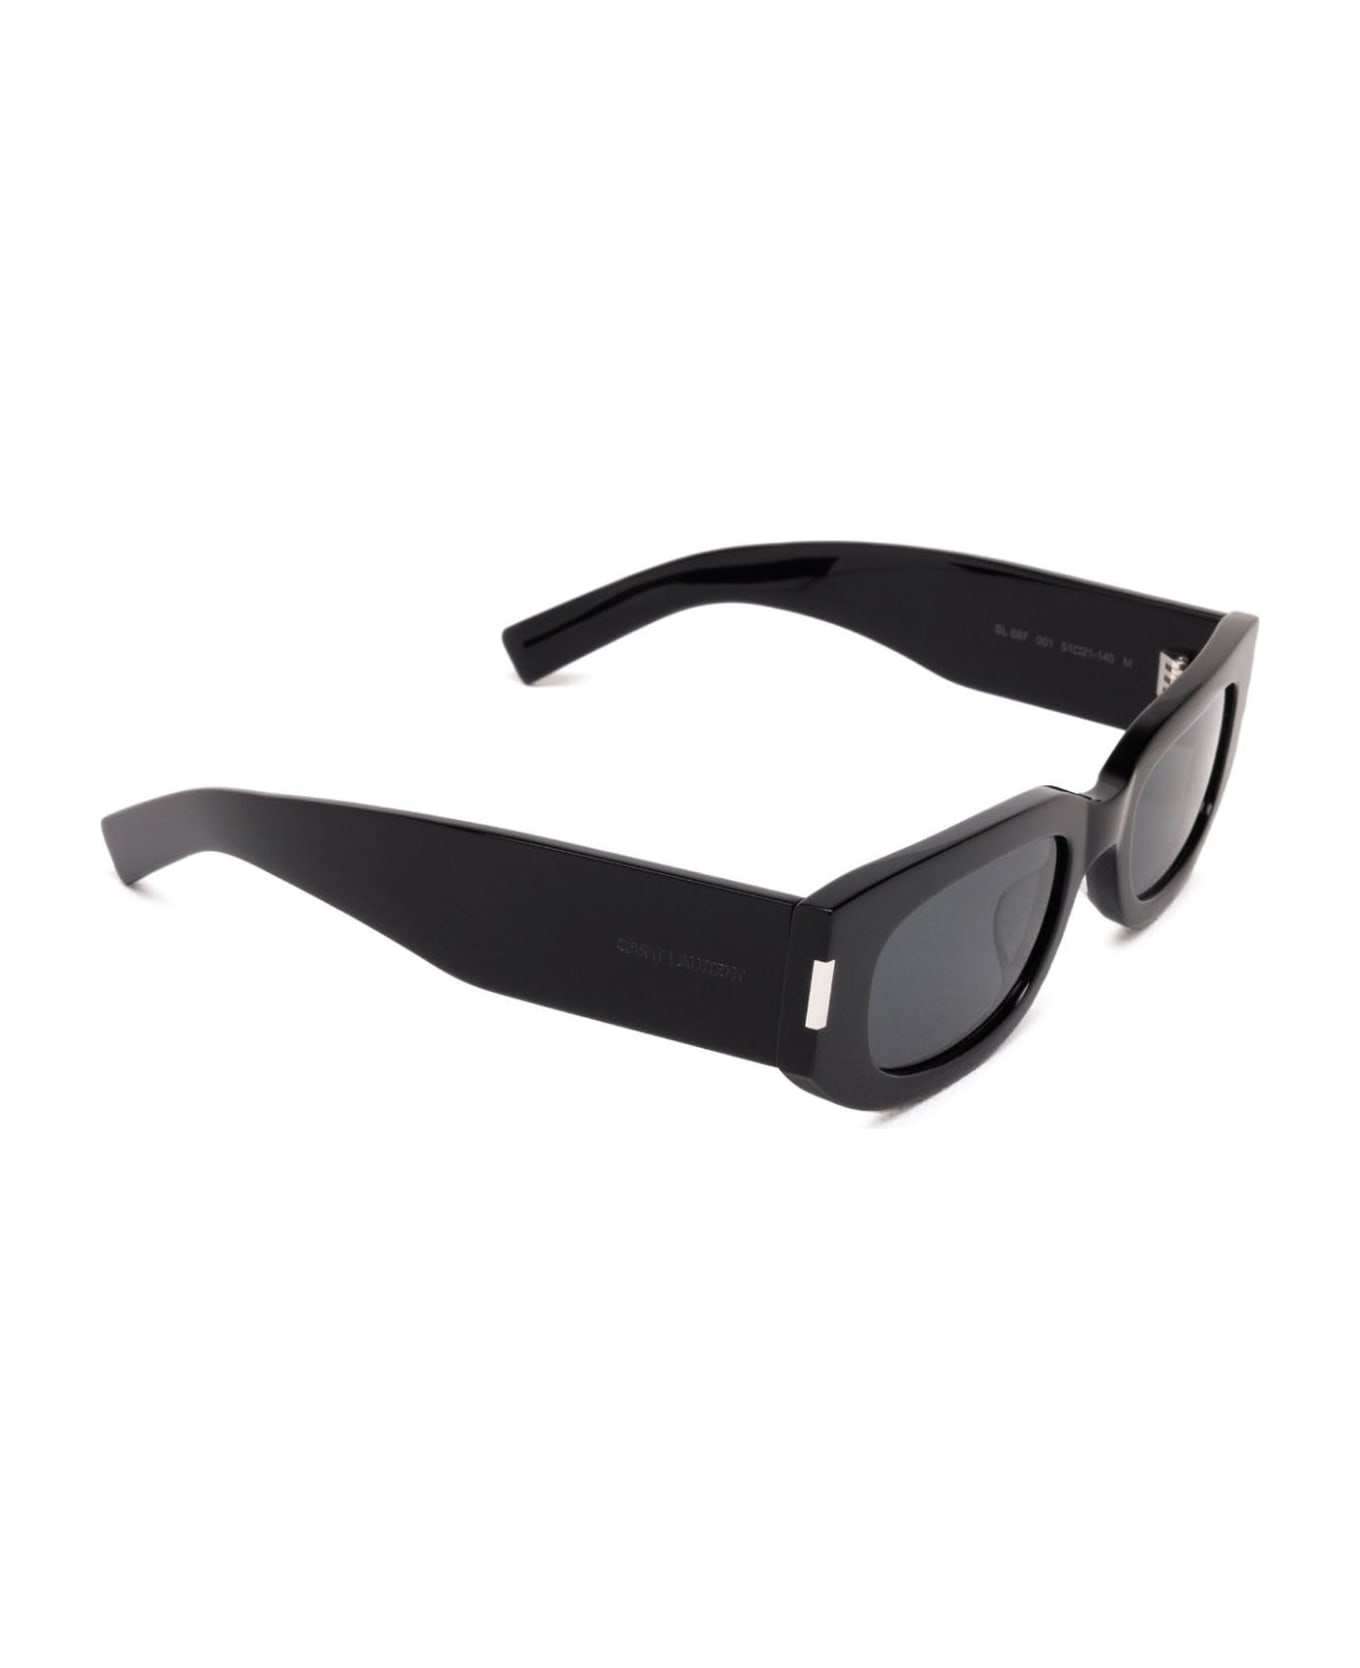 Saint Laurent Eyewear Sl 697 Black Sunglasses - Black